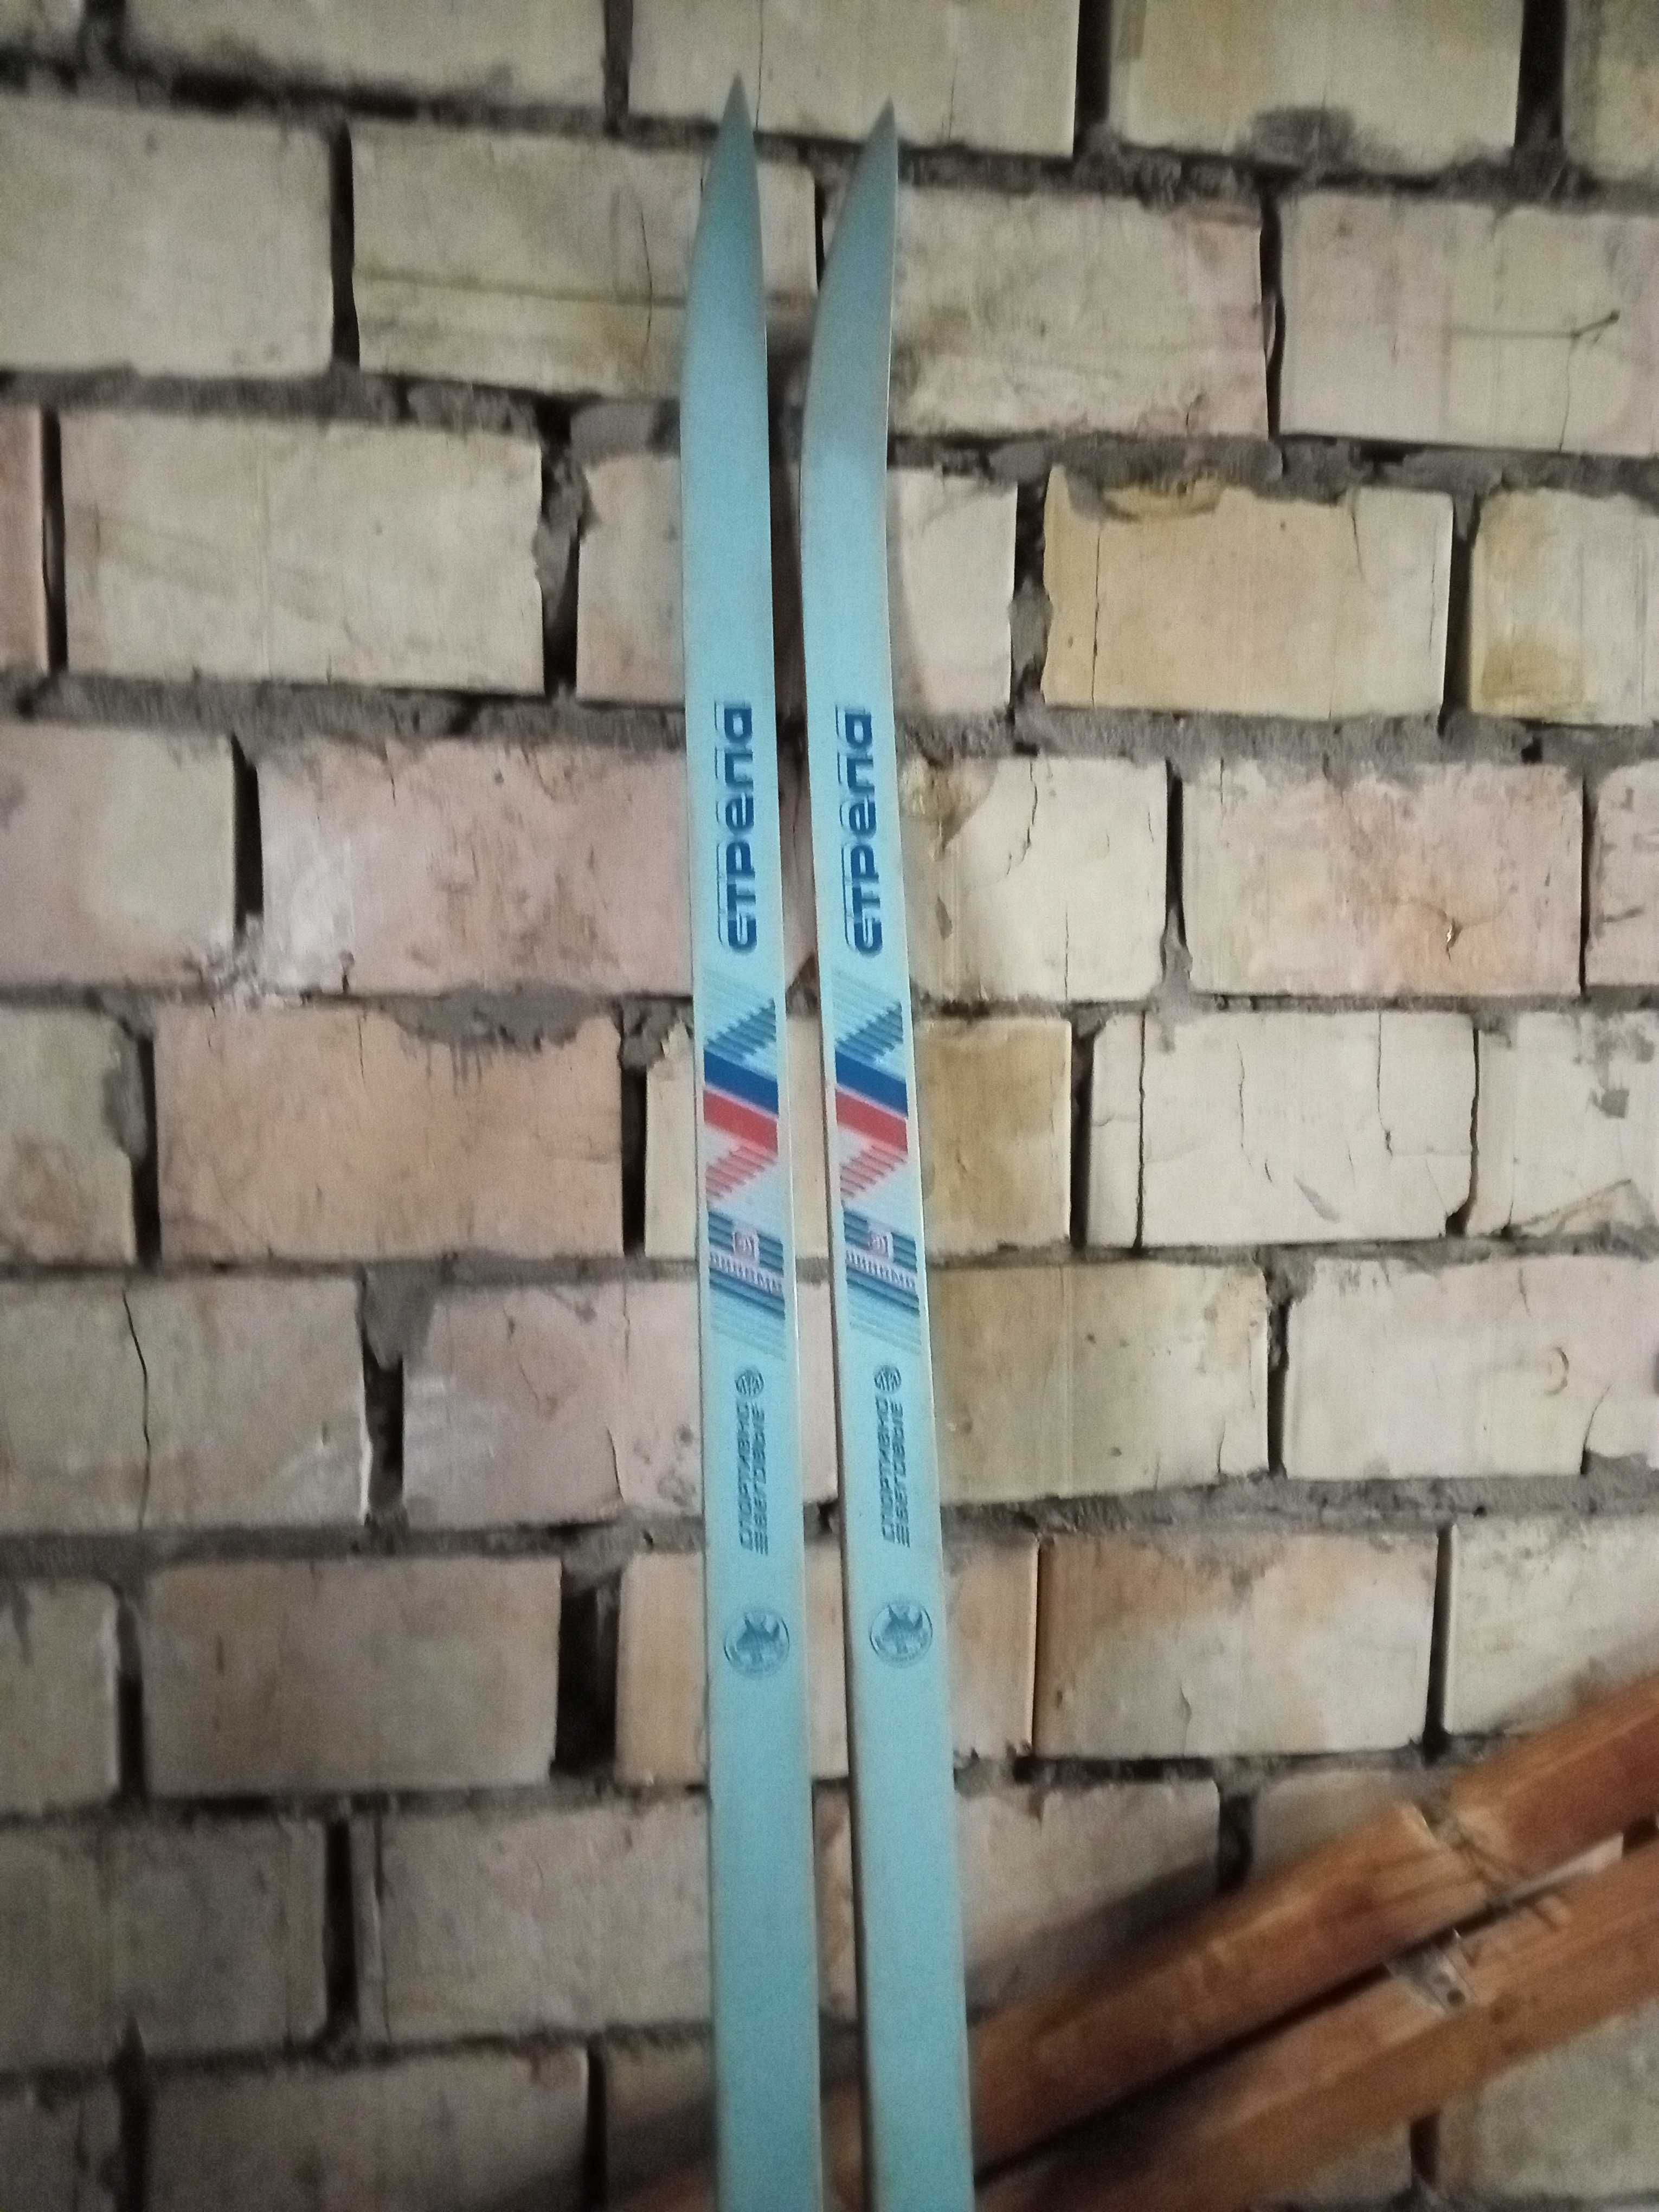 Бігові лижі дерев'яні Стріла (Стрела), 2метри, нові, рарітет СССР